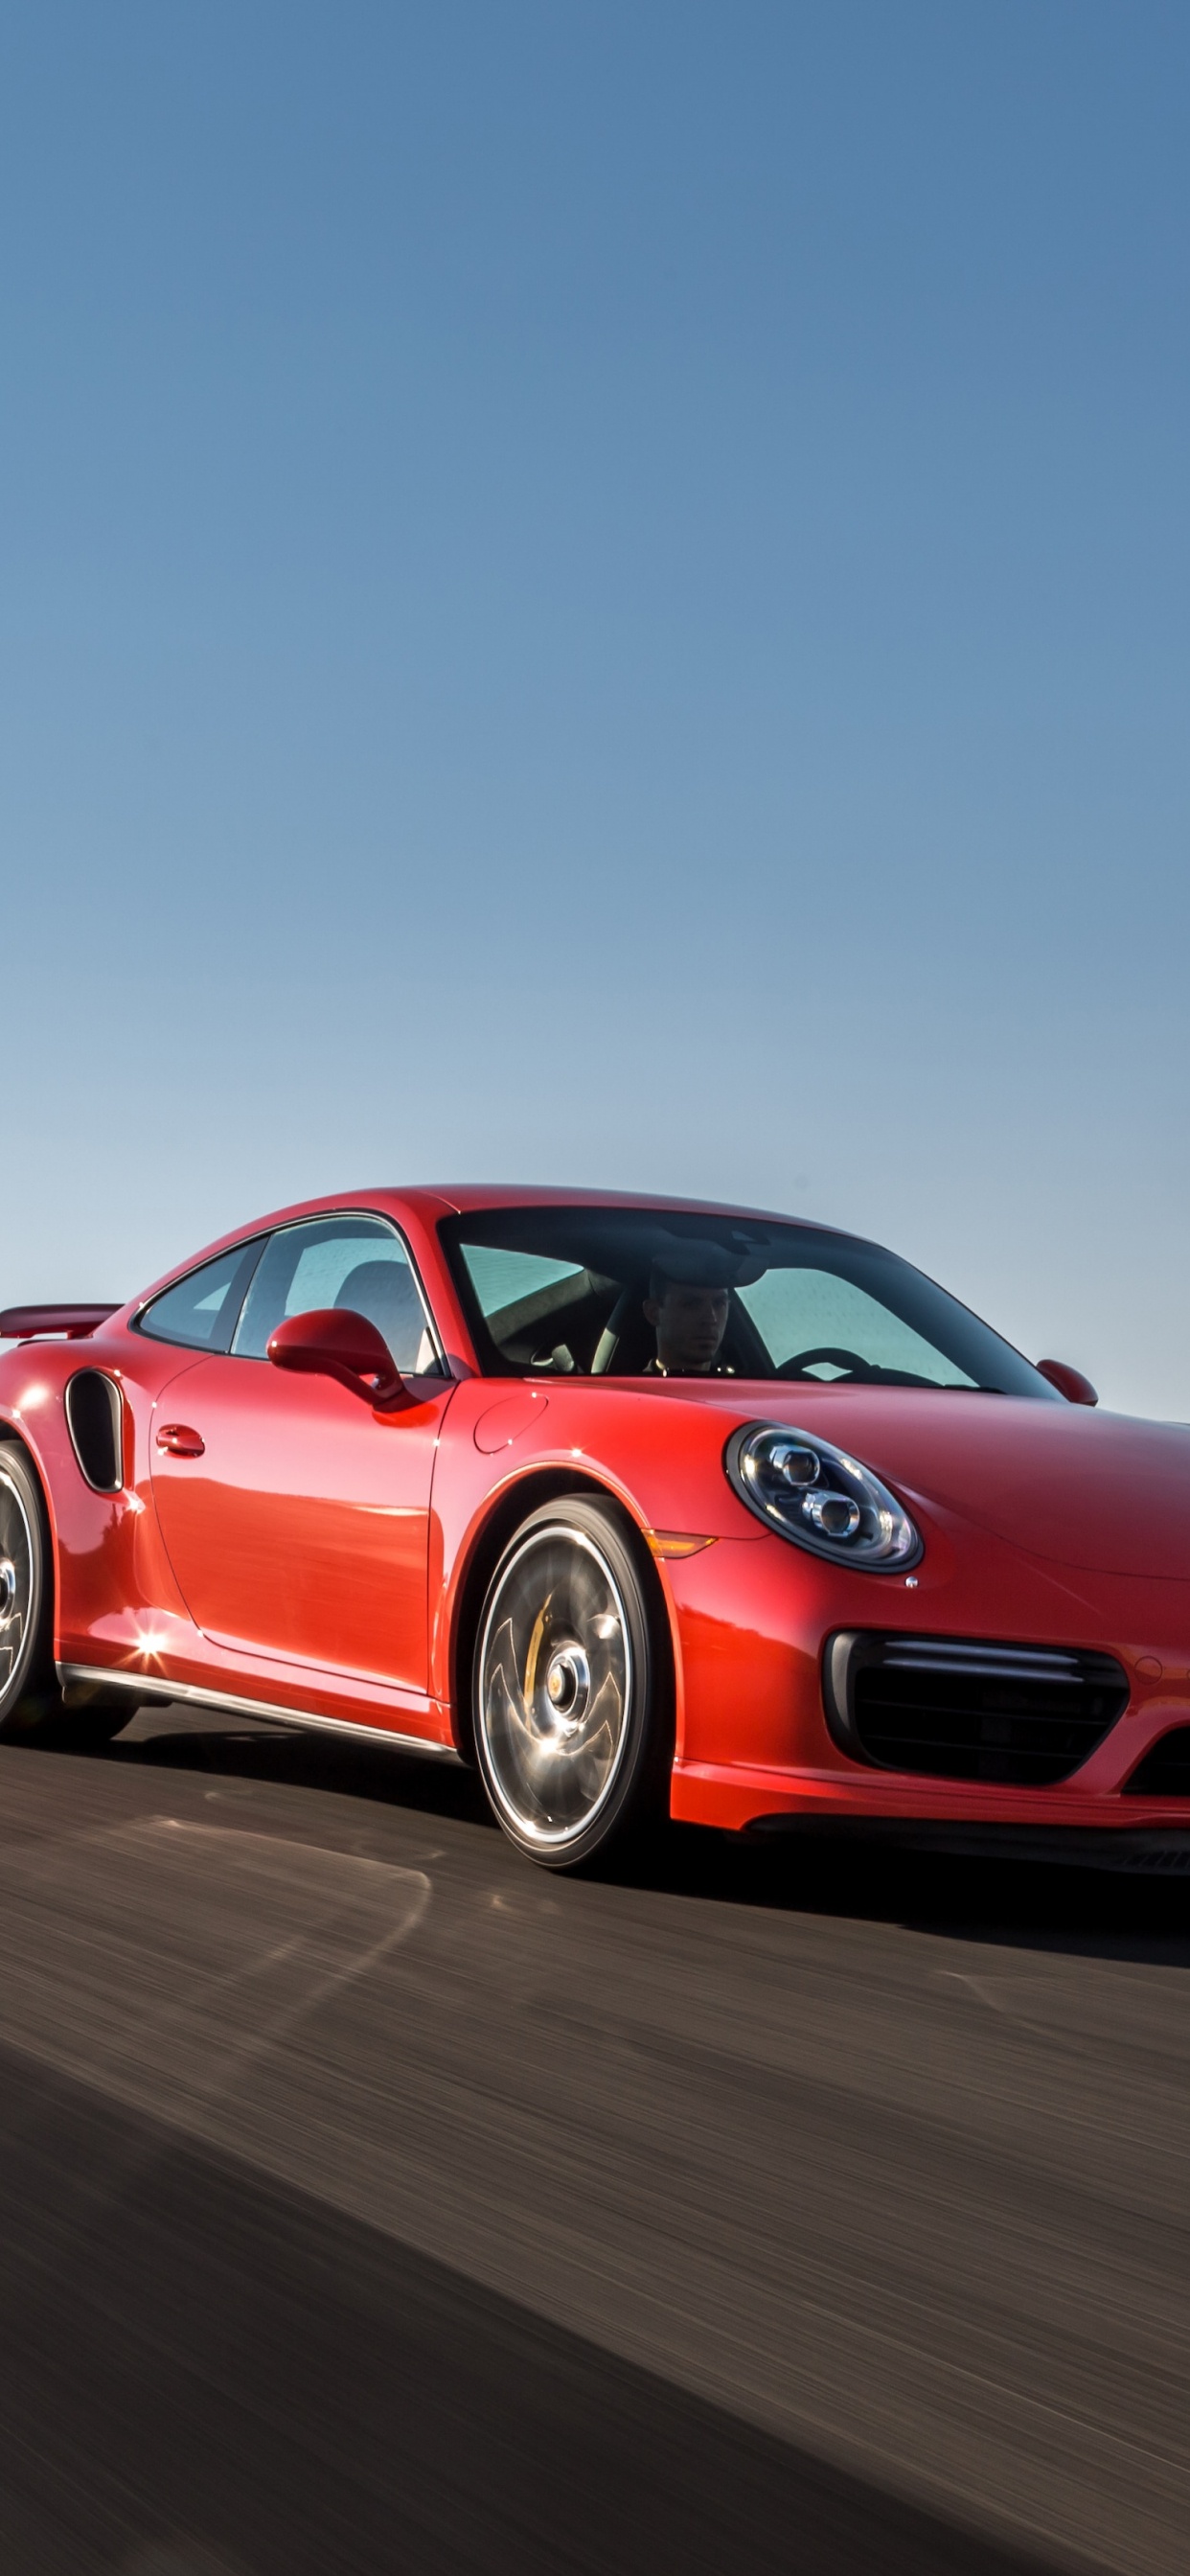 Porsche 911 Rouge Sur Route Pendant la Journée. Wallpaper in 1242x2688 Resolution